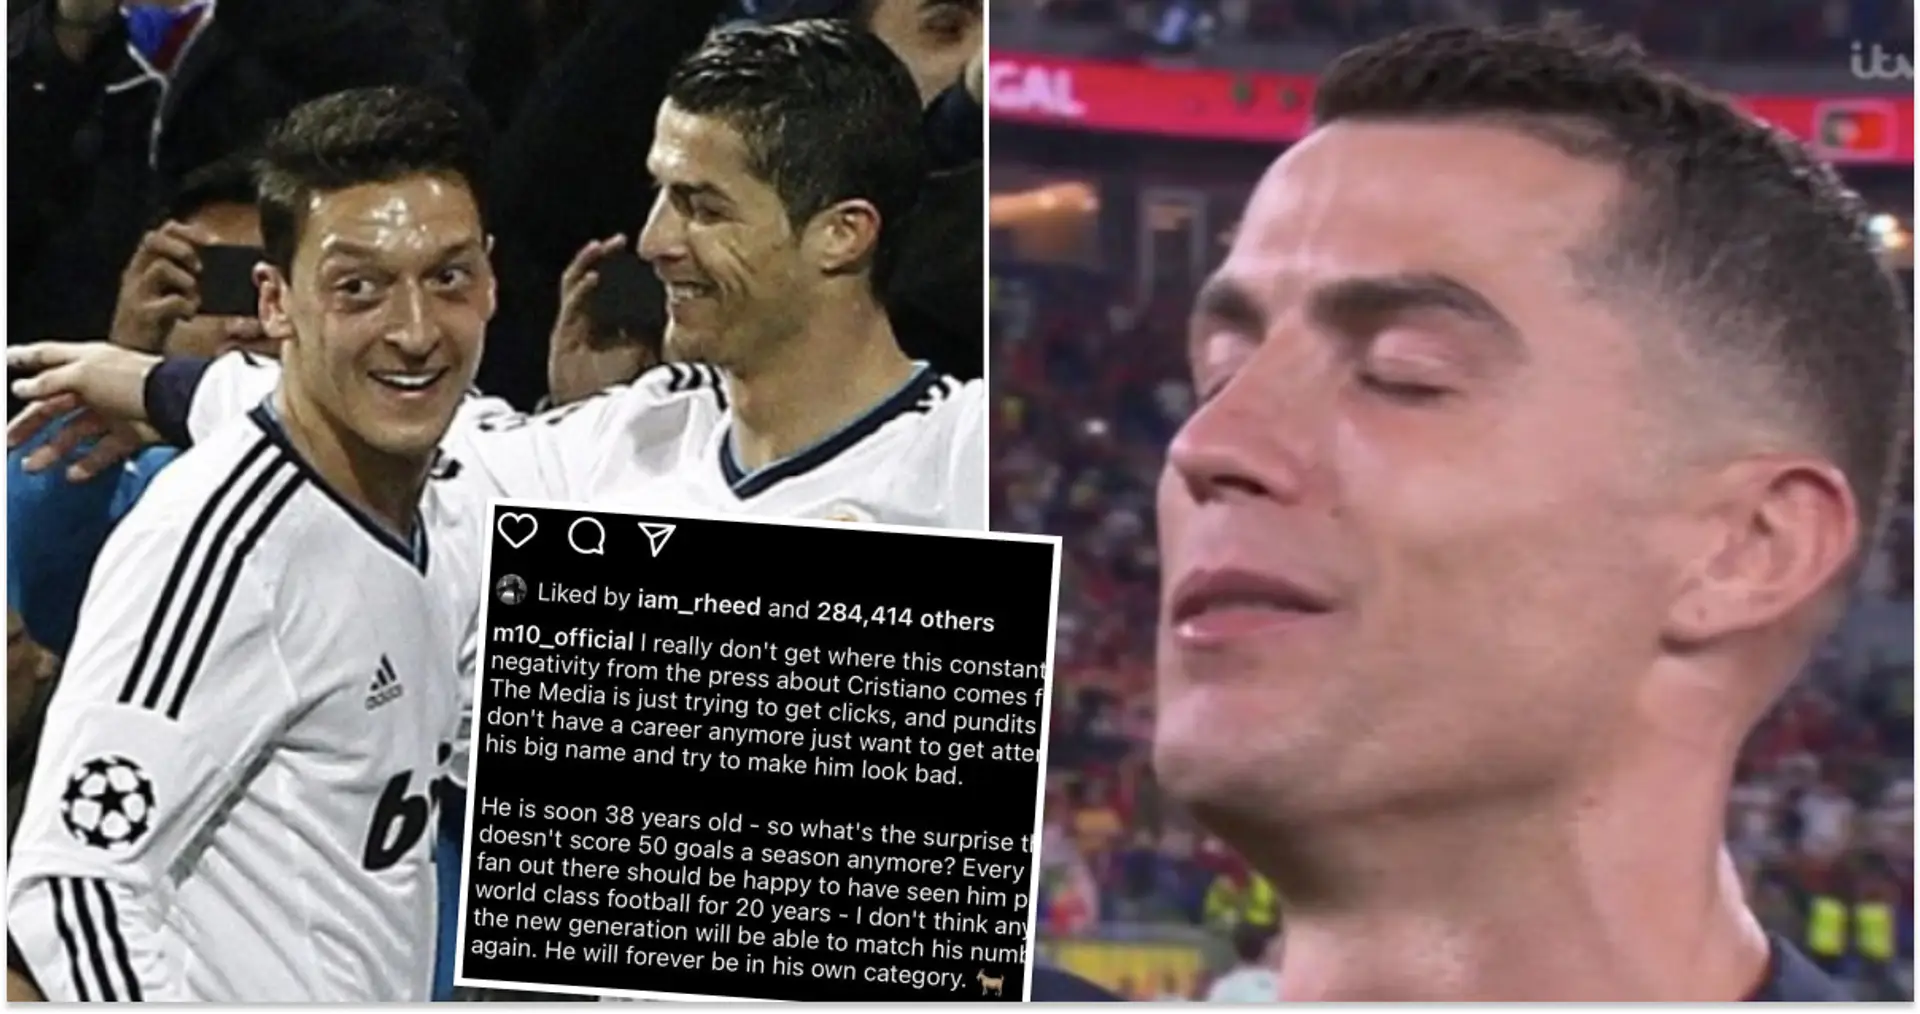 Mesut Ozil s'en prend aux médias pour les critiques sur Cristiano Ronaldo et dit qu'il "mérite plus de respect"